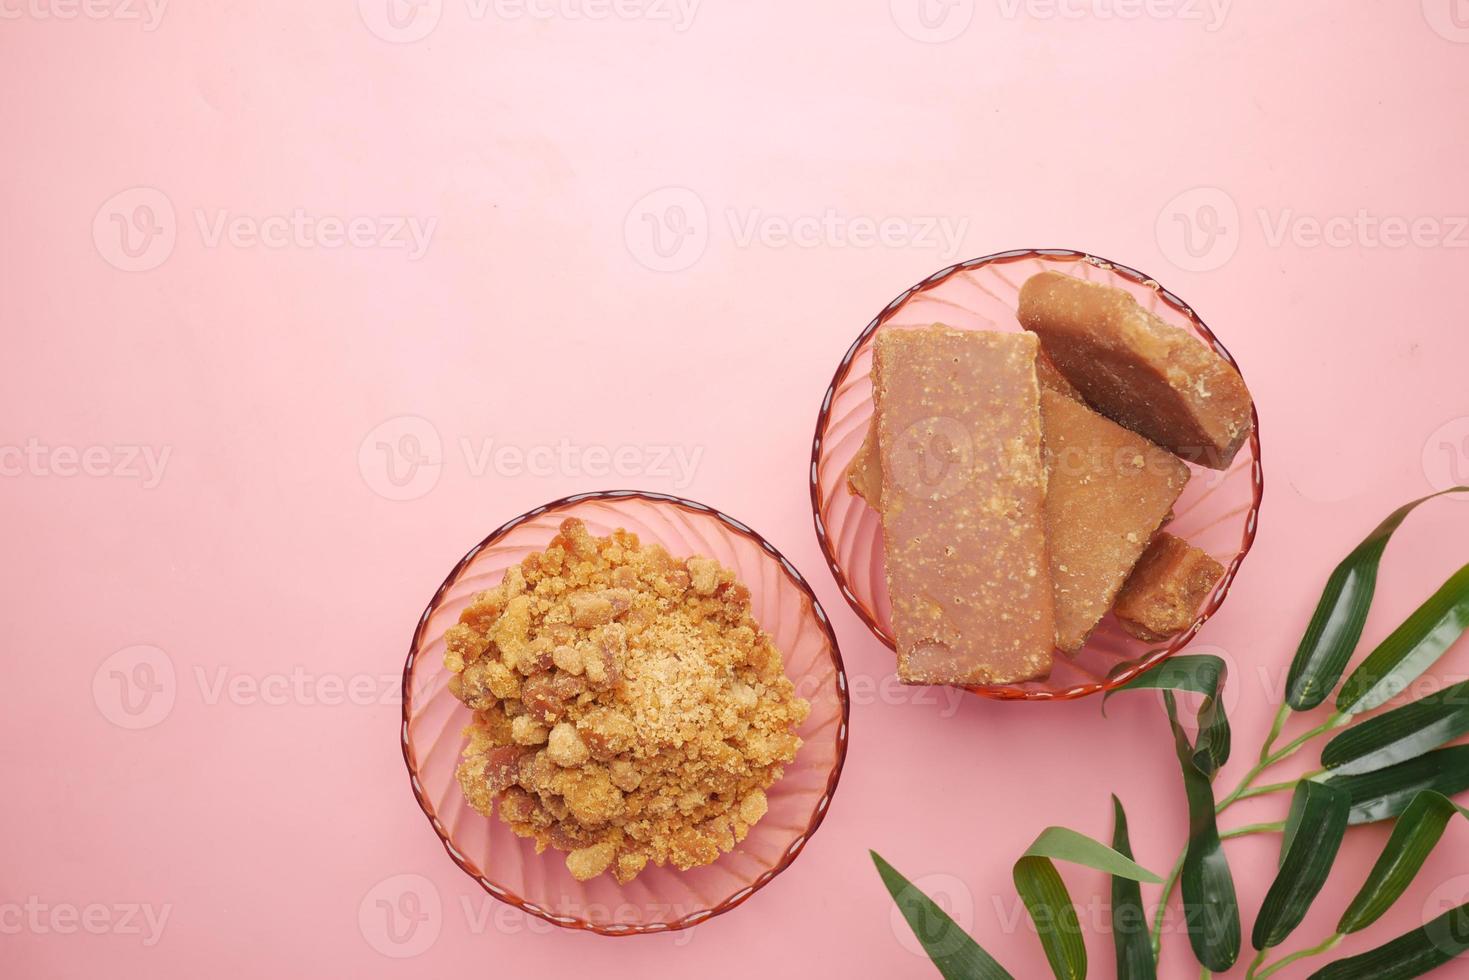 pila di jaggery tradizionale zolletta di zucchero di canna su pink foto